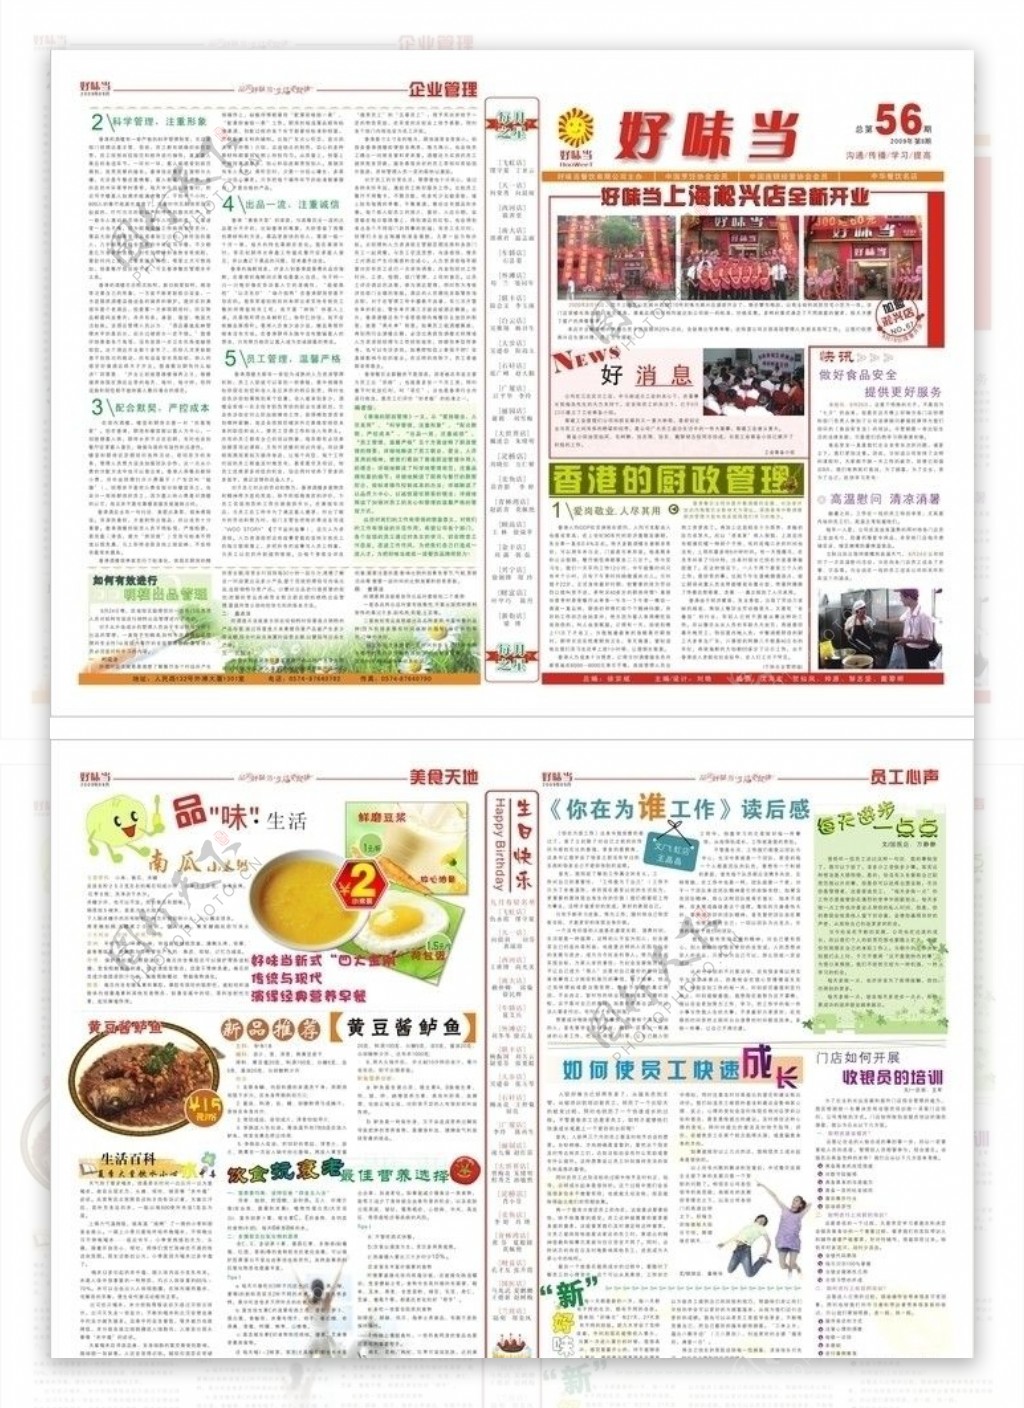 餐饮企业内刊报纸设计图片